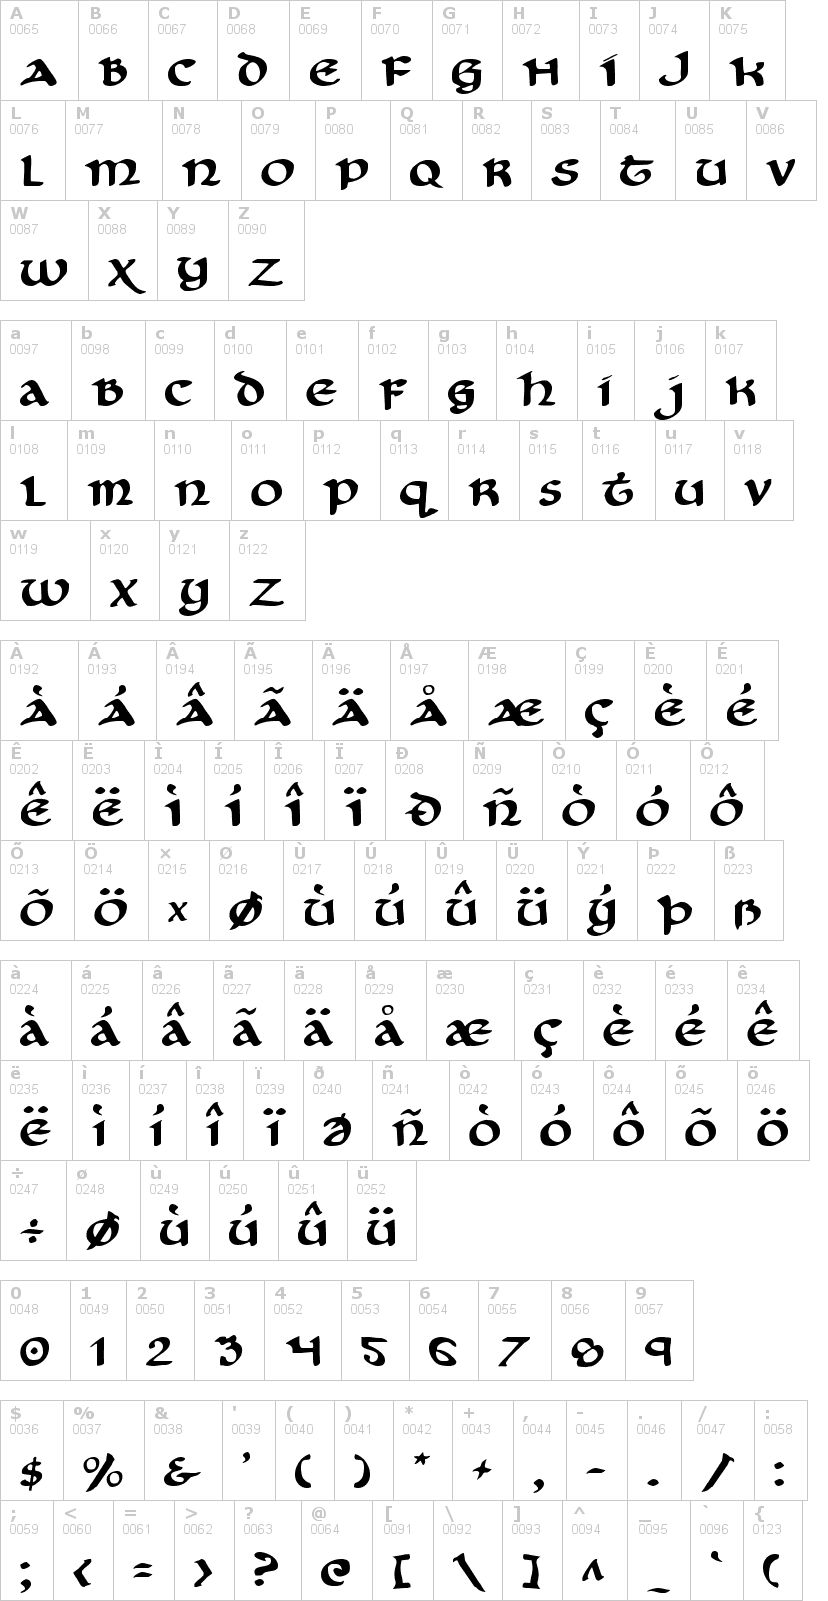 Lettere dell'alfabeto del font cry-uncial con le quali è possibile realizzare adesivi prespaziati